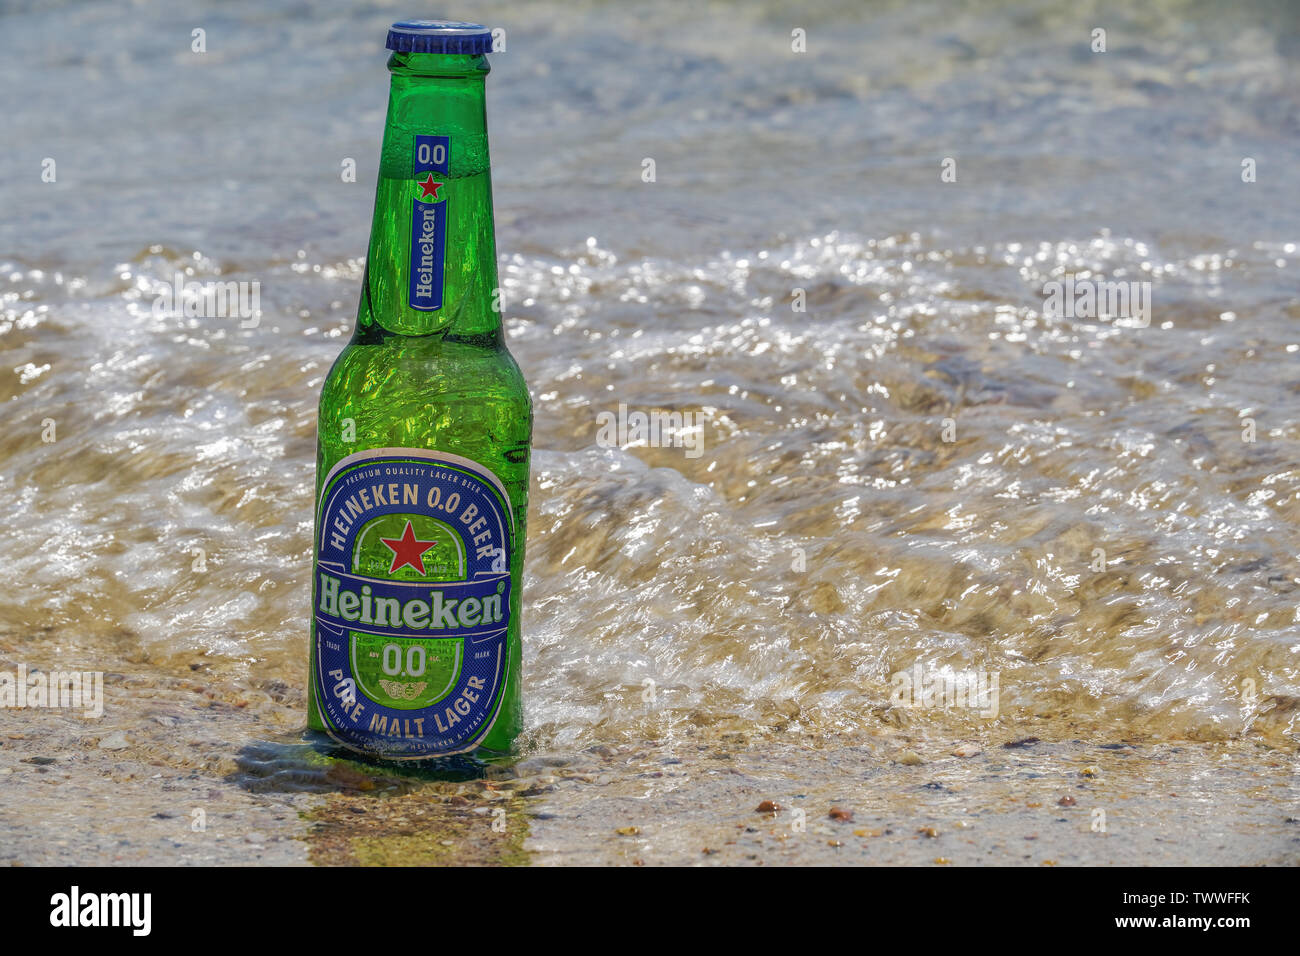 Heineken null Alkohol Bier Flasche auf Sand am Meer. Sunny View von alkoholfreien Pilsener auf einem 33-cl-Glasflasche, teilweise auf Sandstrand versenkt. Stockfoto